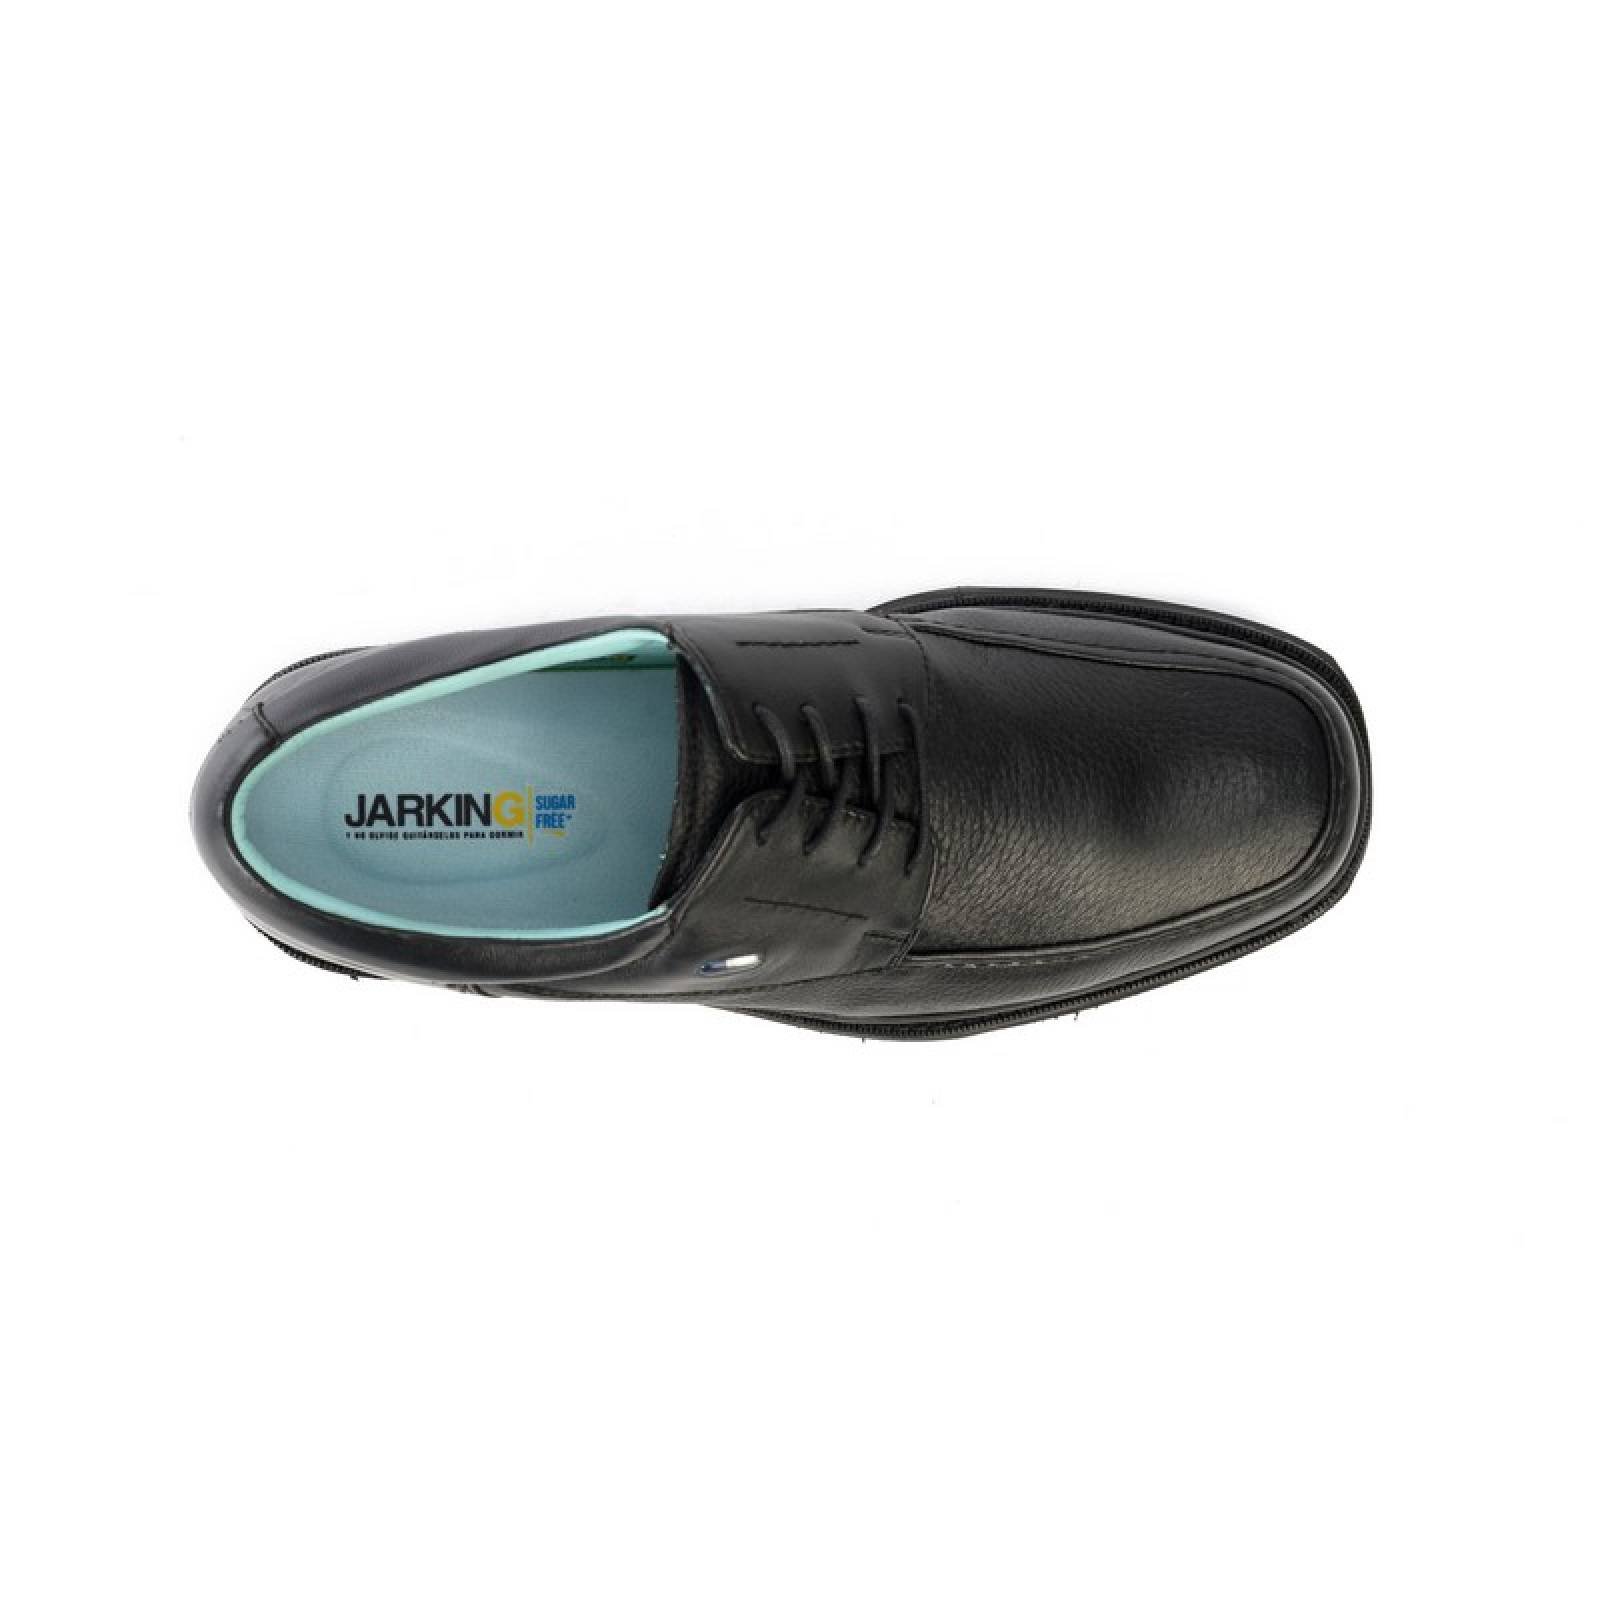 Jarking - Zapato Formal Negro con Ajuste de Agujetas y Amplitud Especial para Caballero